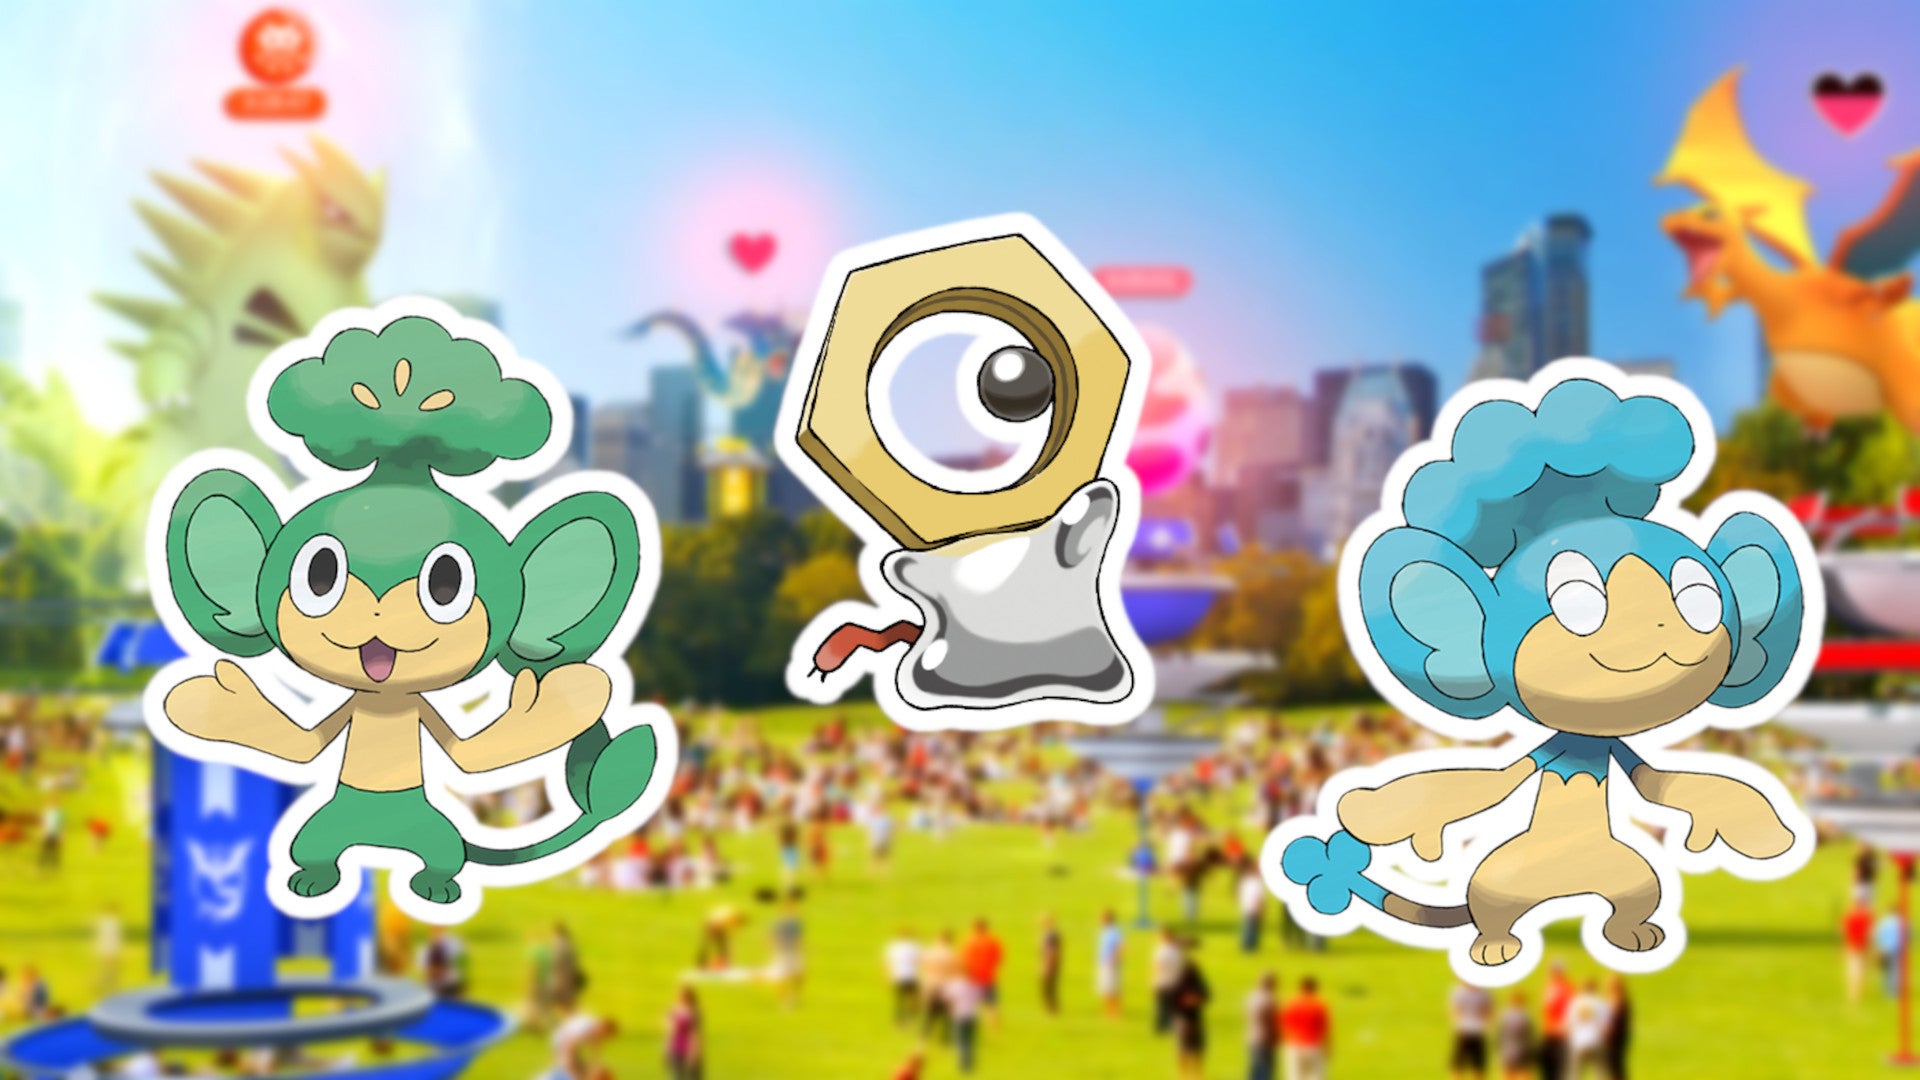 Pokémon Go: Let's Go Event bringt seltenes Shiny und regionale Pokémon - Alle Infos im Überblick!